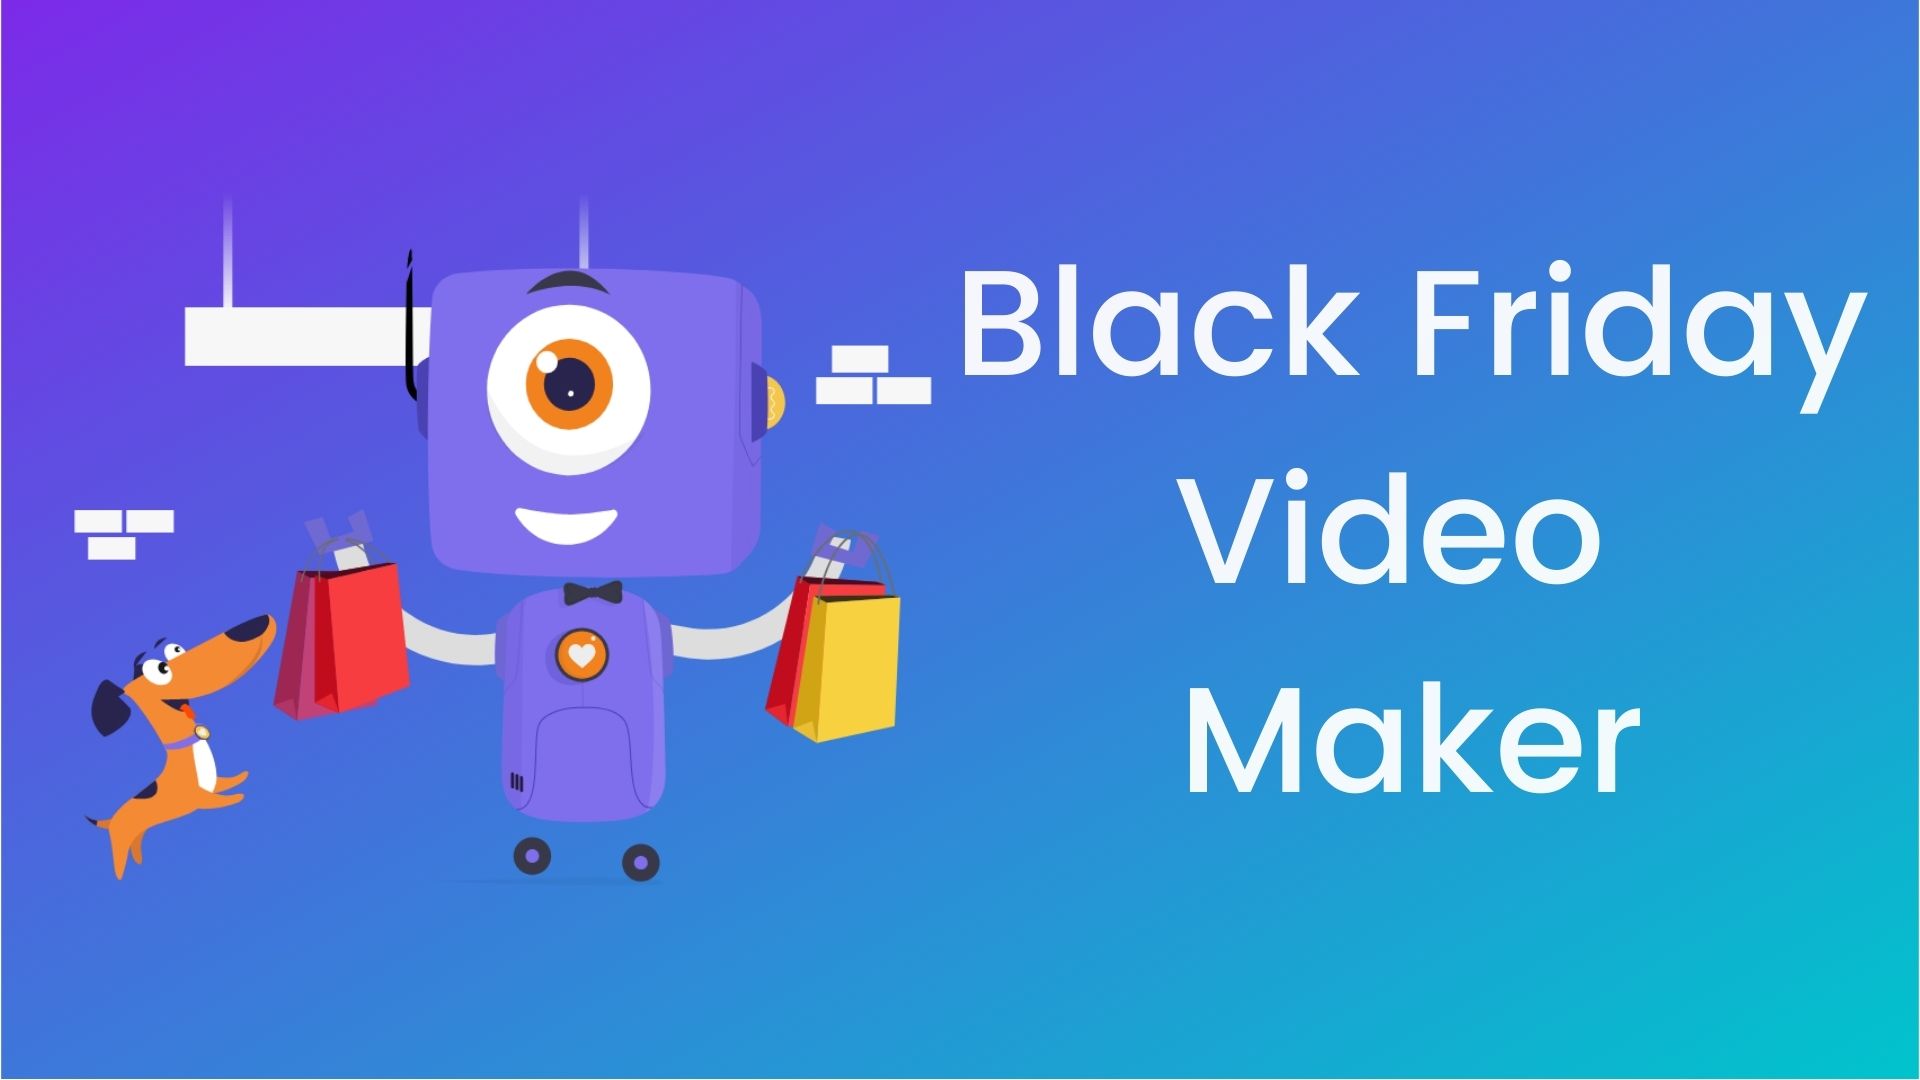 Black friday video maker banner image